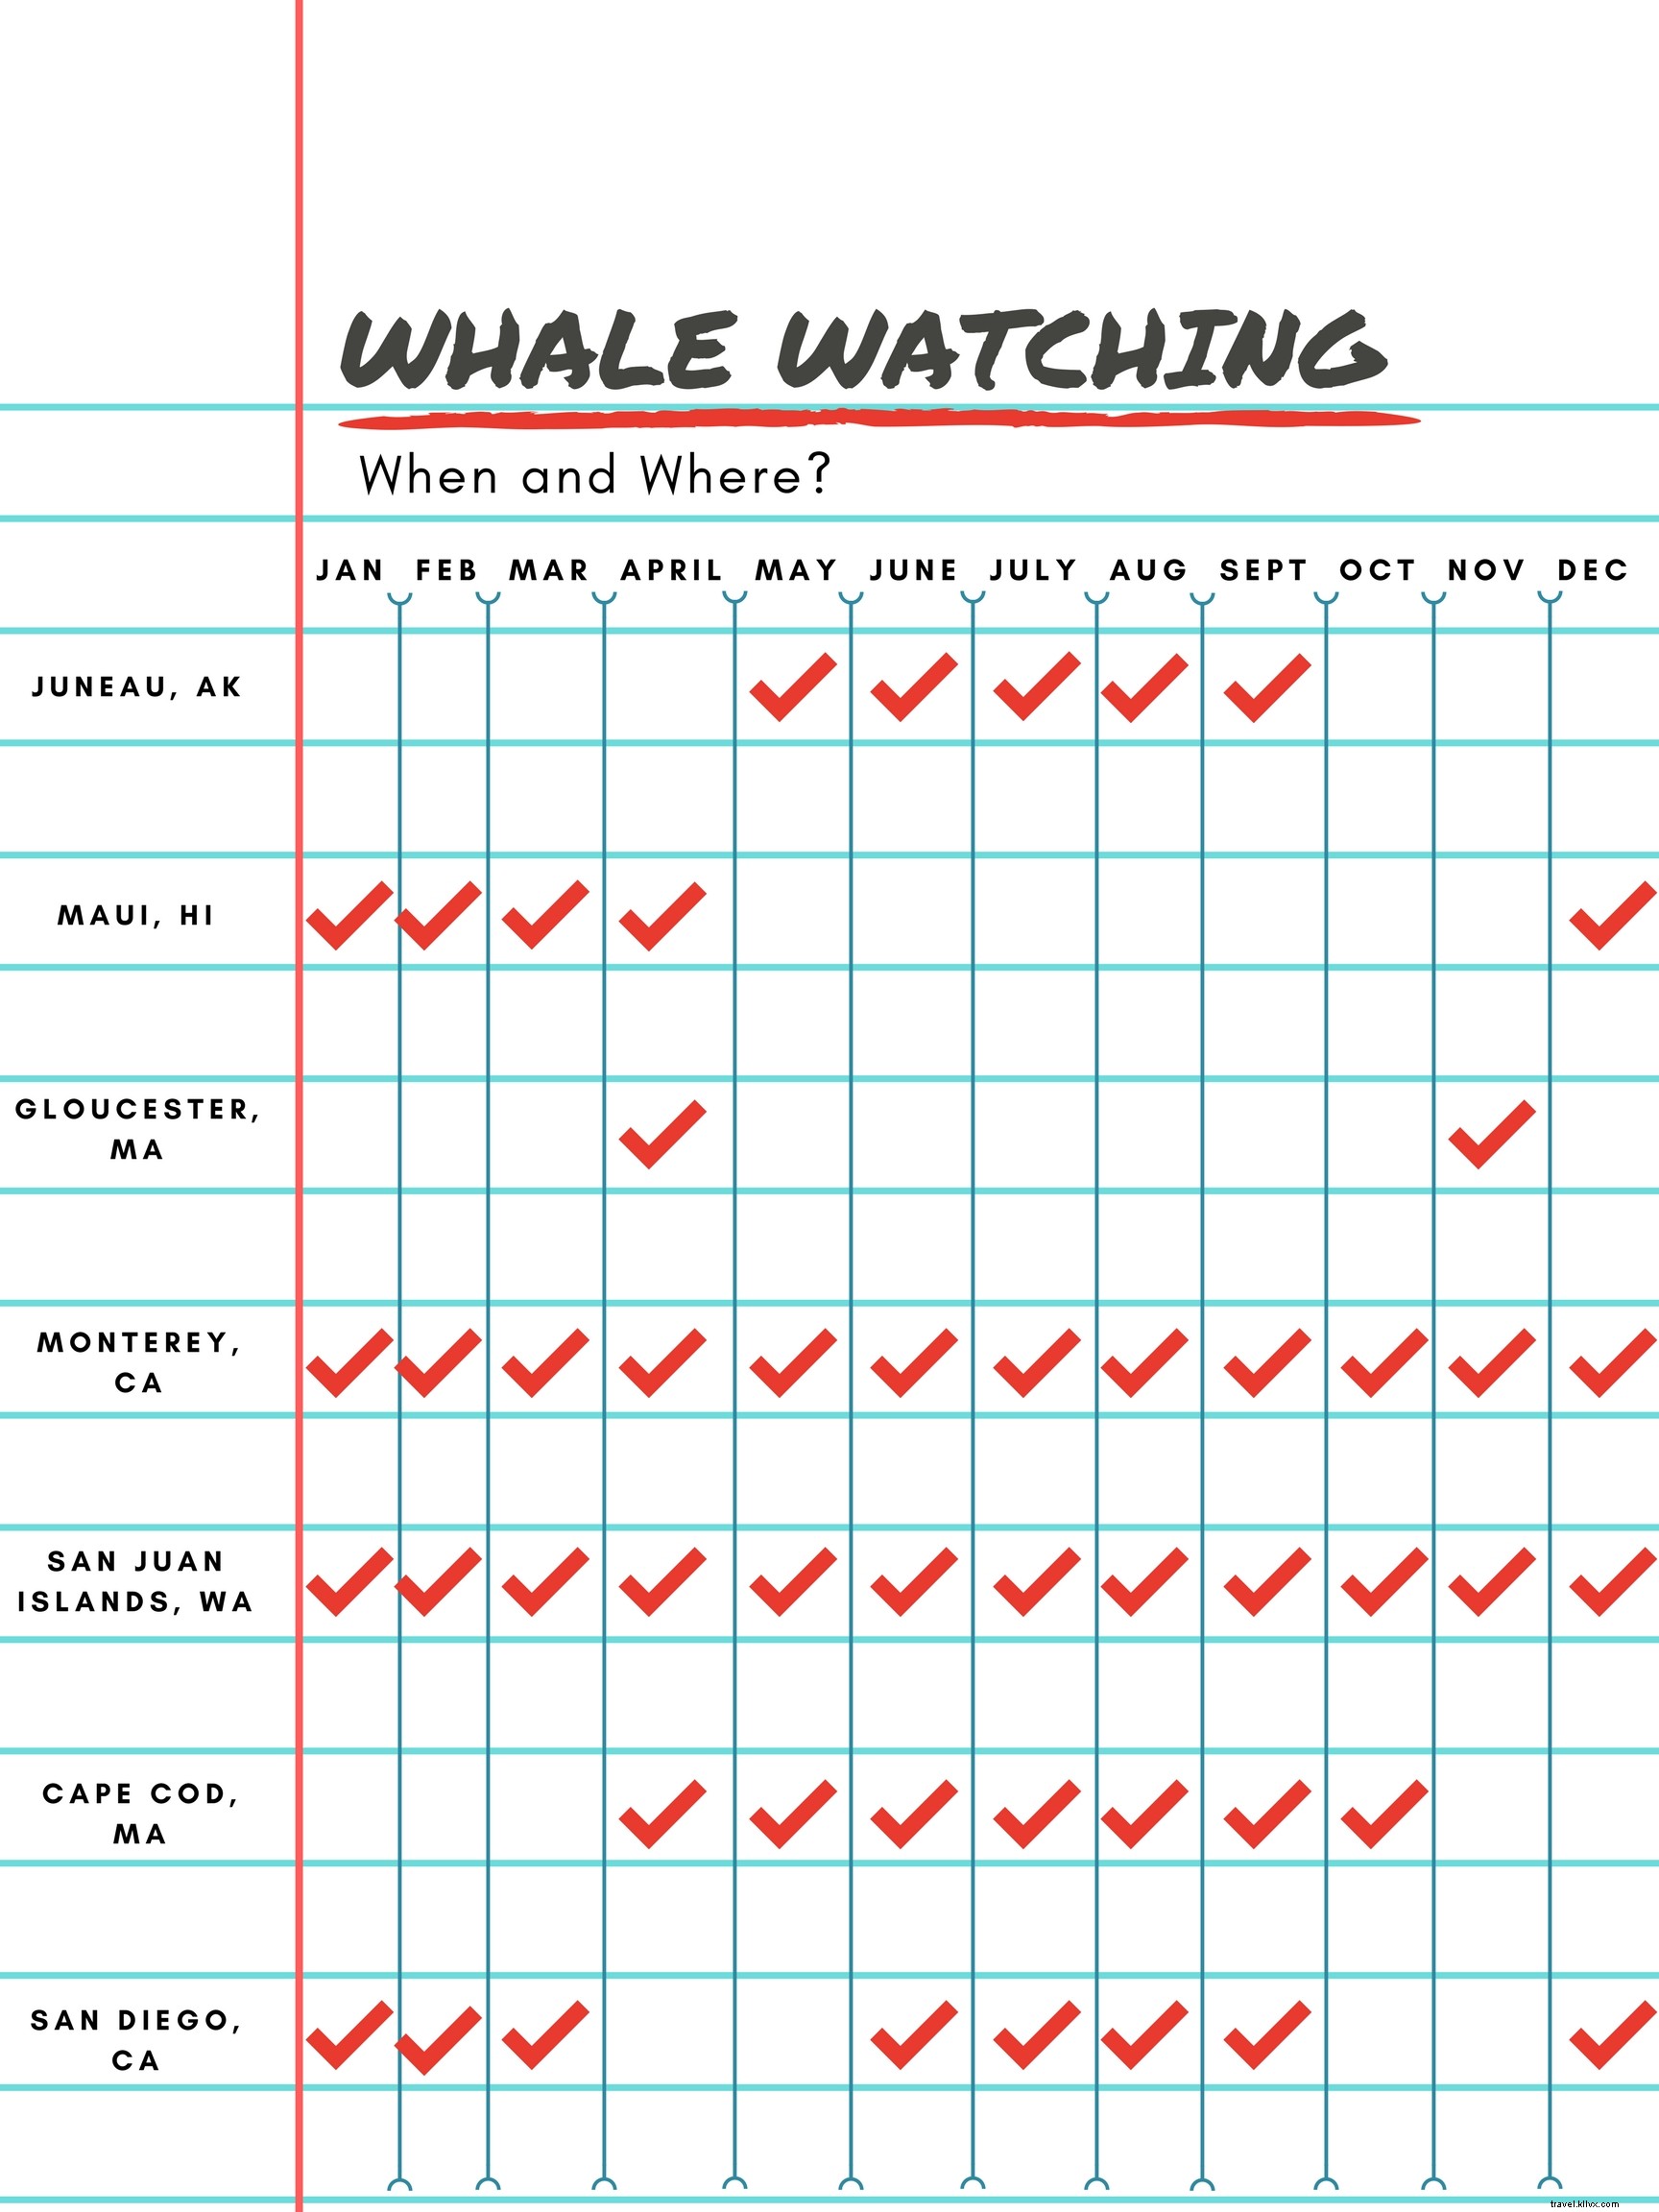 El dónde y cuándo del avistamiento de ballenas:no se requiere pasaporte 